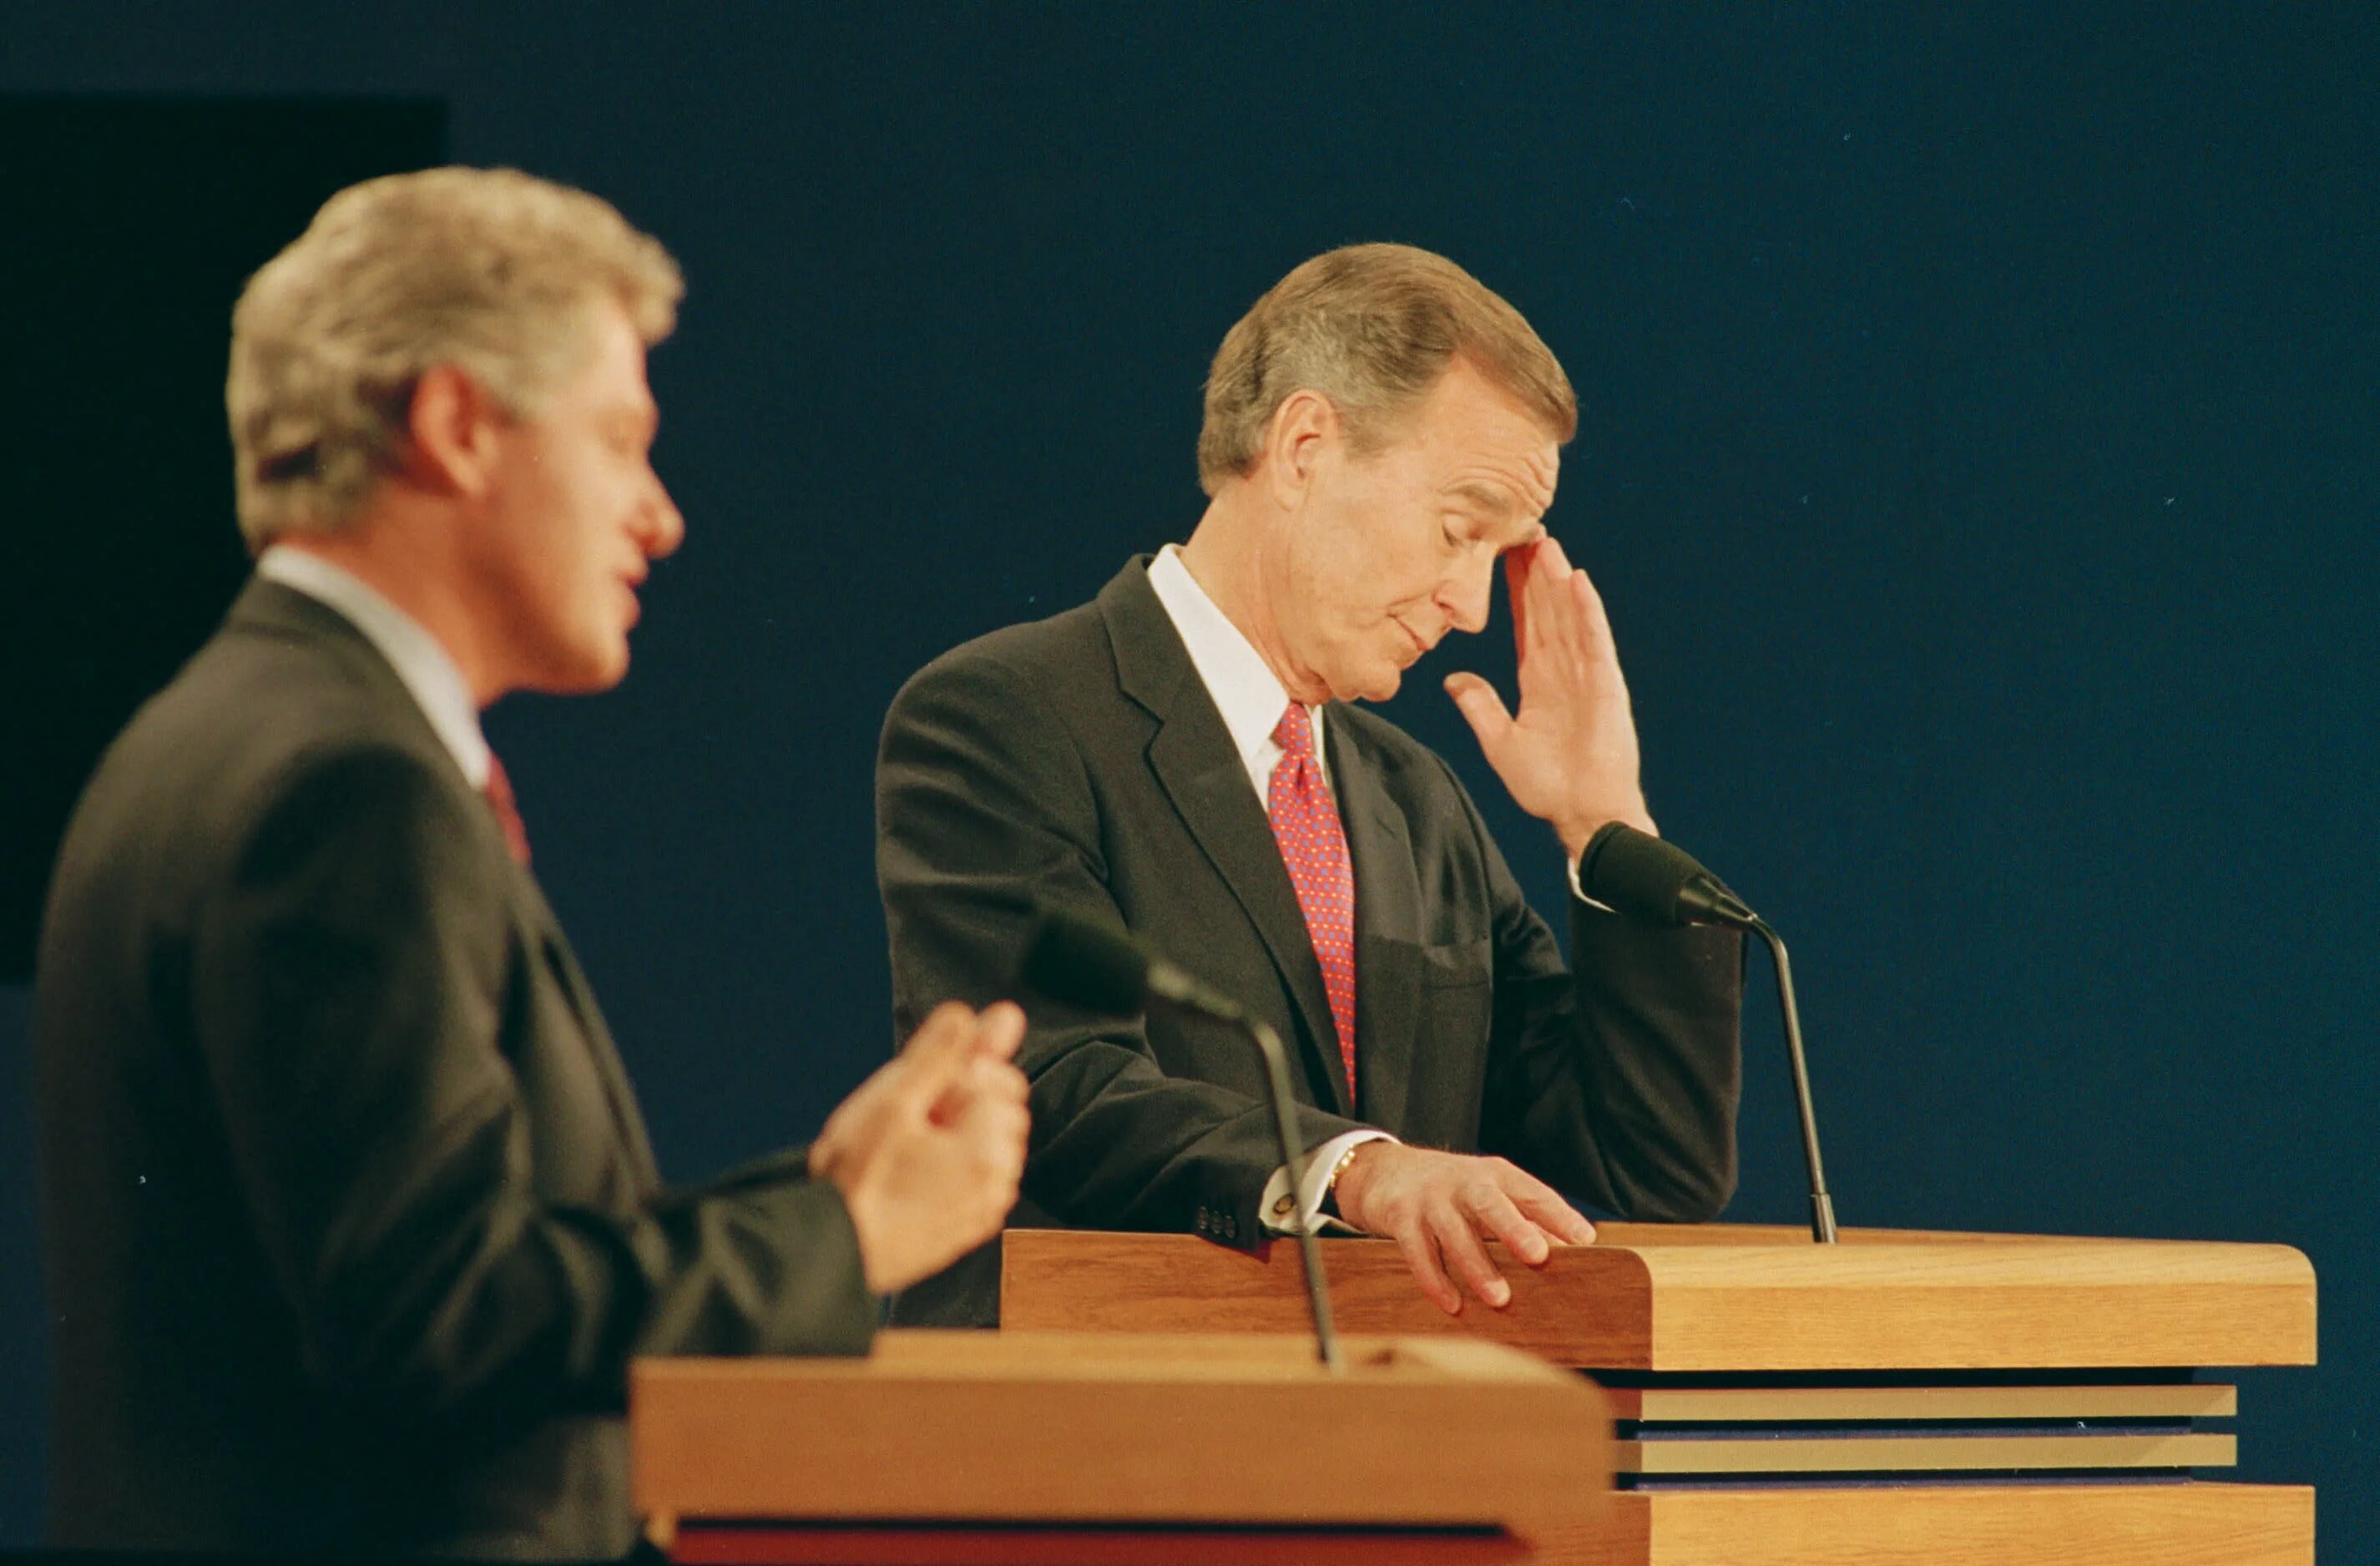 Когда начинаются дебаты президента. Билл Клинтон Буш 1992. Билл Клинтон дебаты 1992. Джордж Буш дебаты. Буш старший и Клинтон выборы 1992.